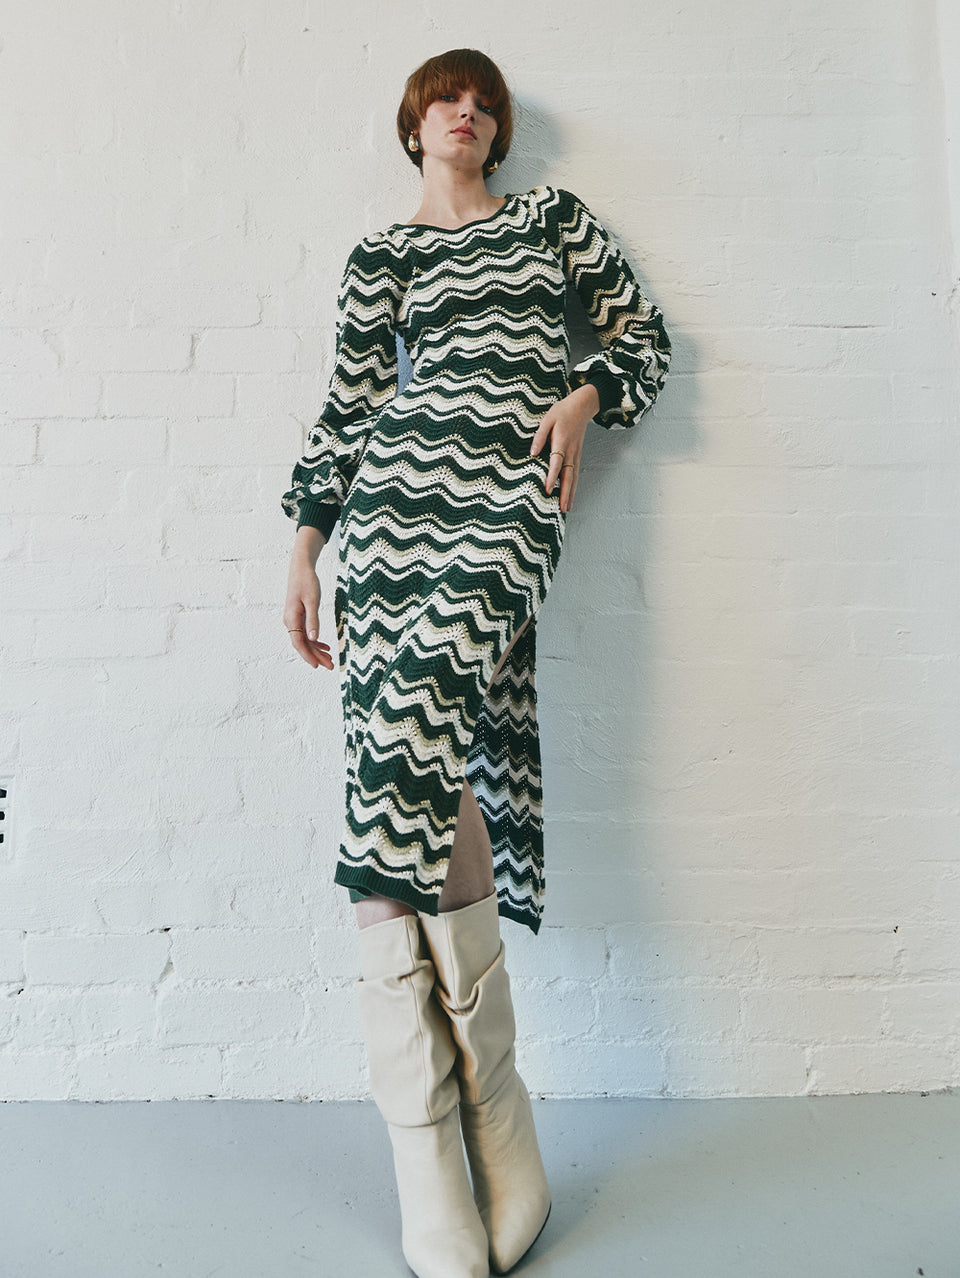 Marcella Knit Midi Dress KIVARI | Model wears green and cream knit midi dress campaign